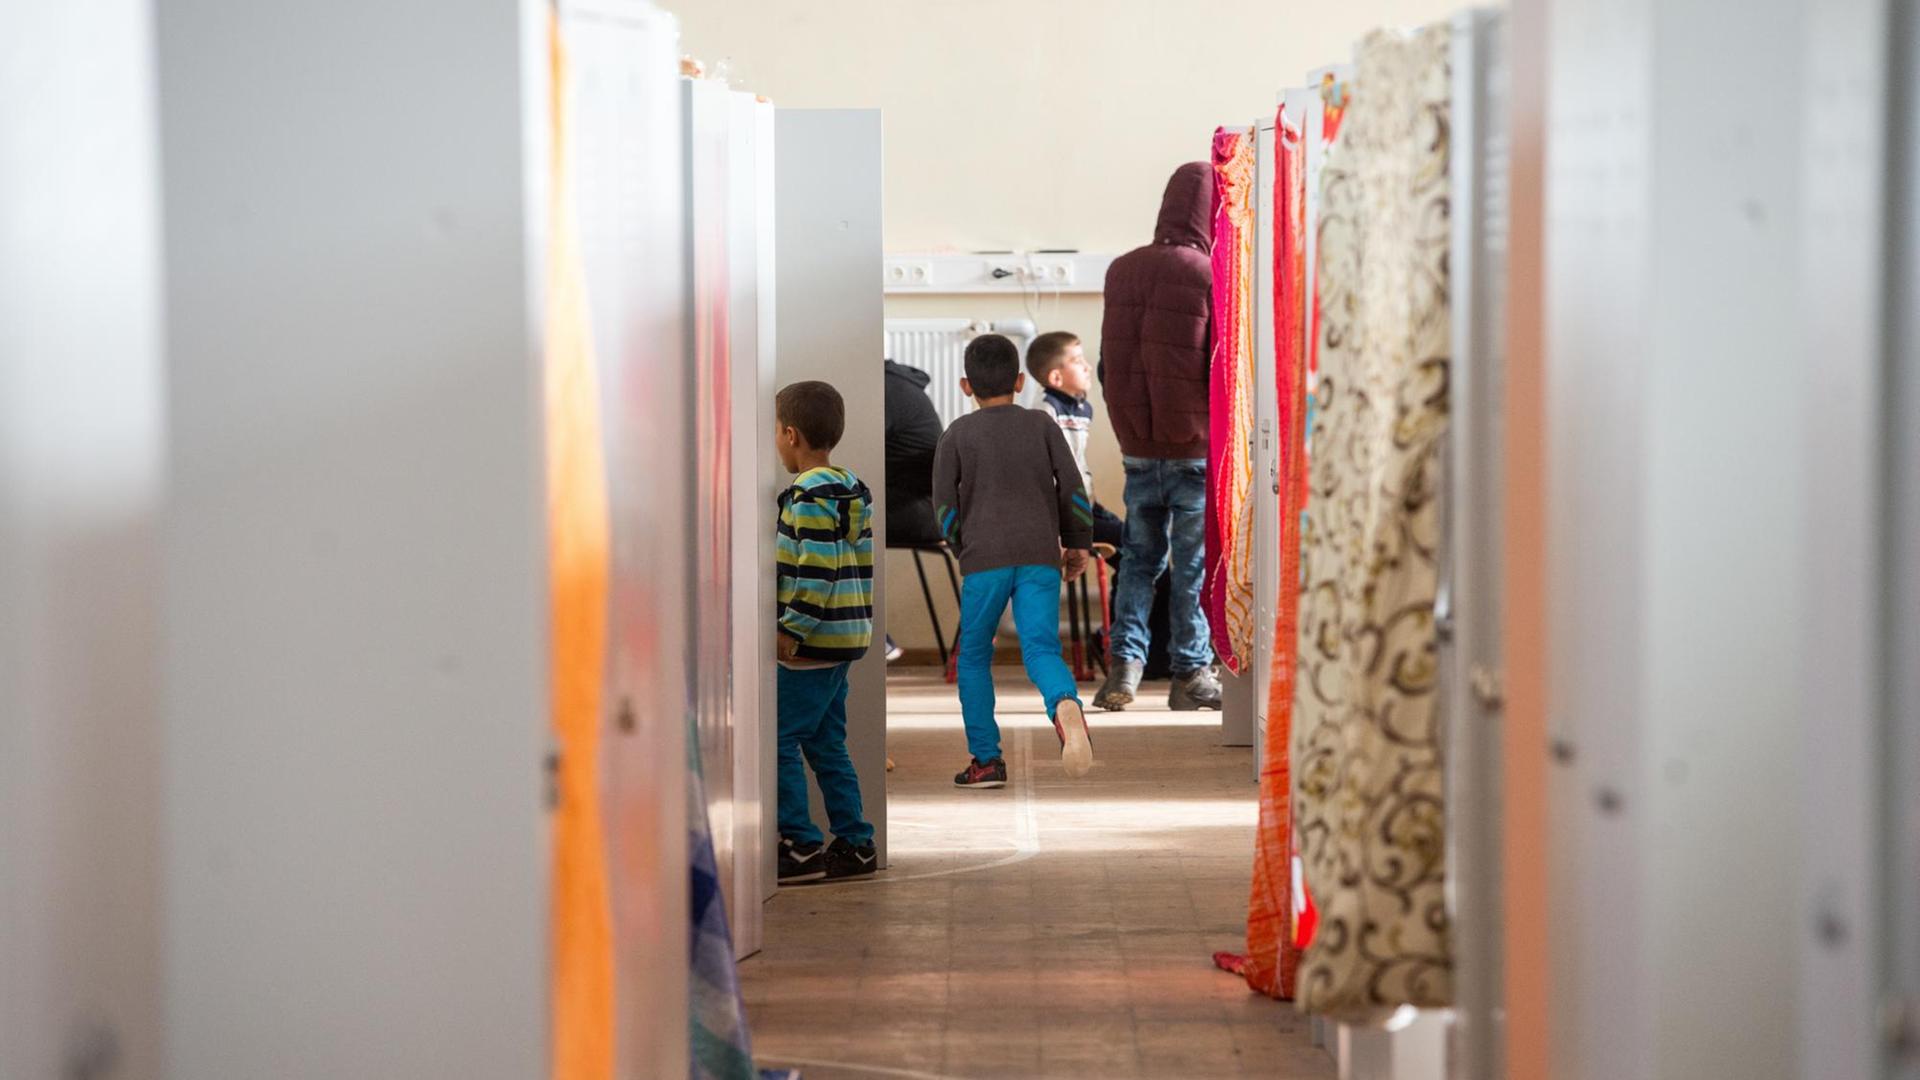 In einer ehemaligen Turnhalle auf dem Gelände der Erstaufnahmeeinrichtung für Asylbewerber in Regensburg (Bayern) sind am 25.09.2015 Flüchtlinge untergebracht.